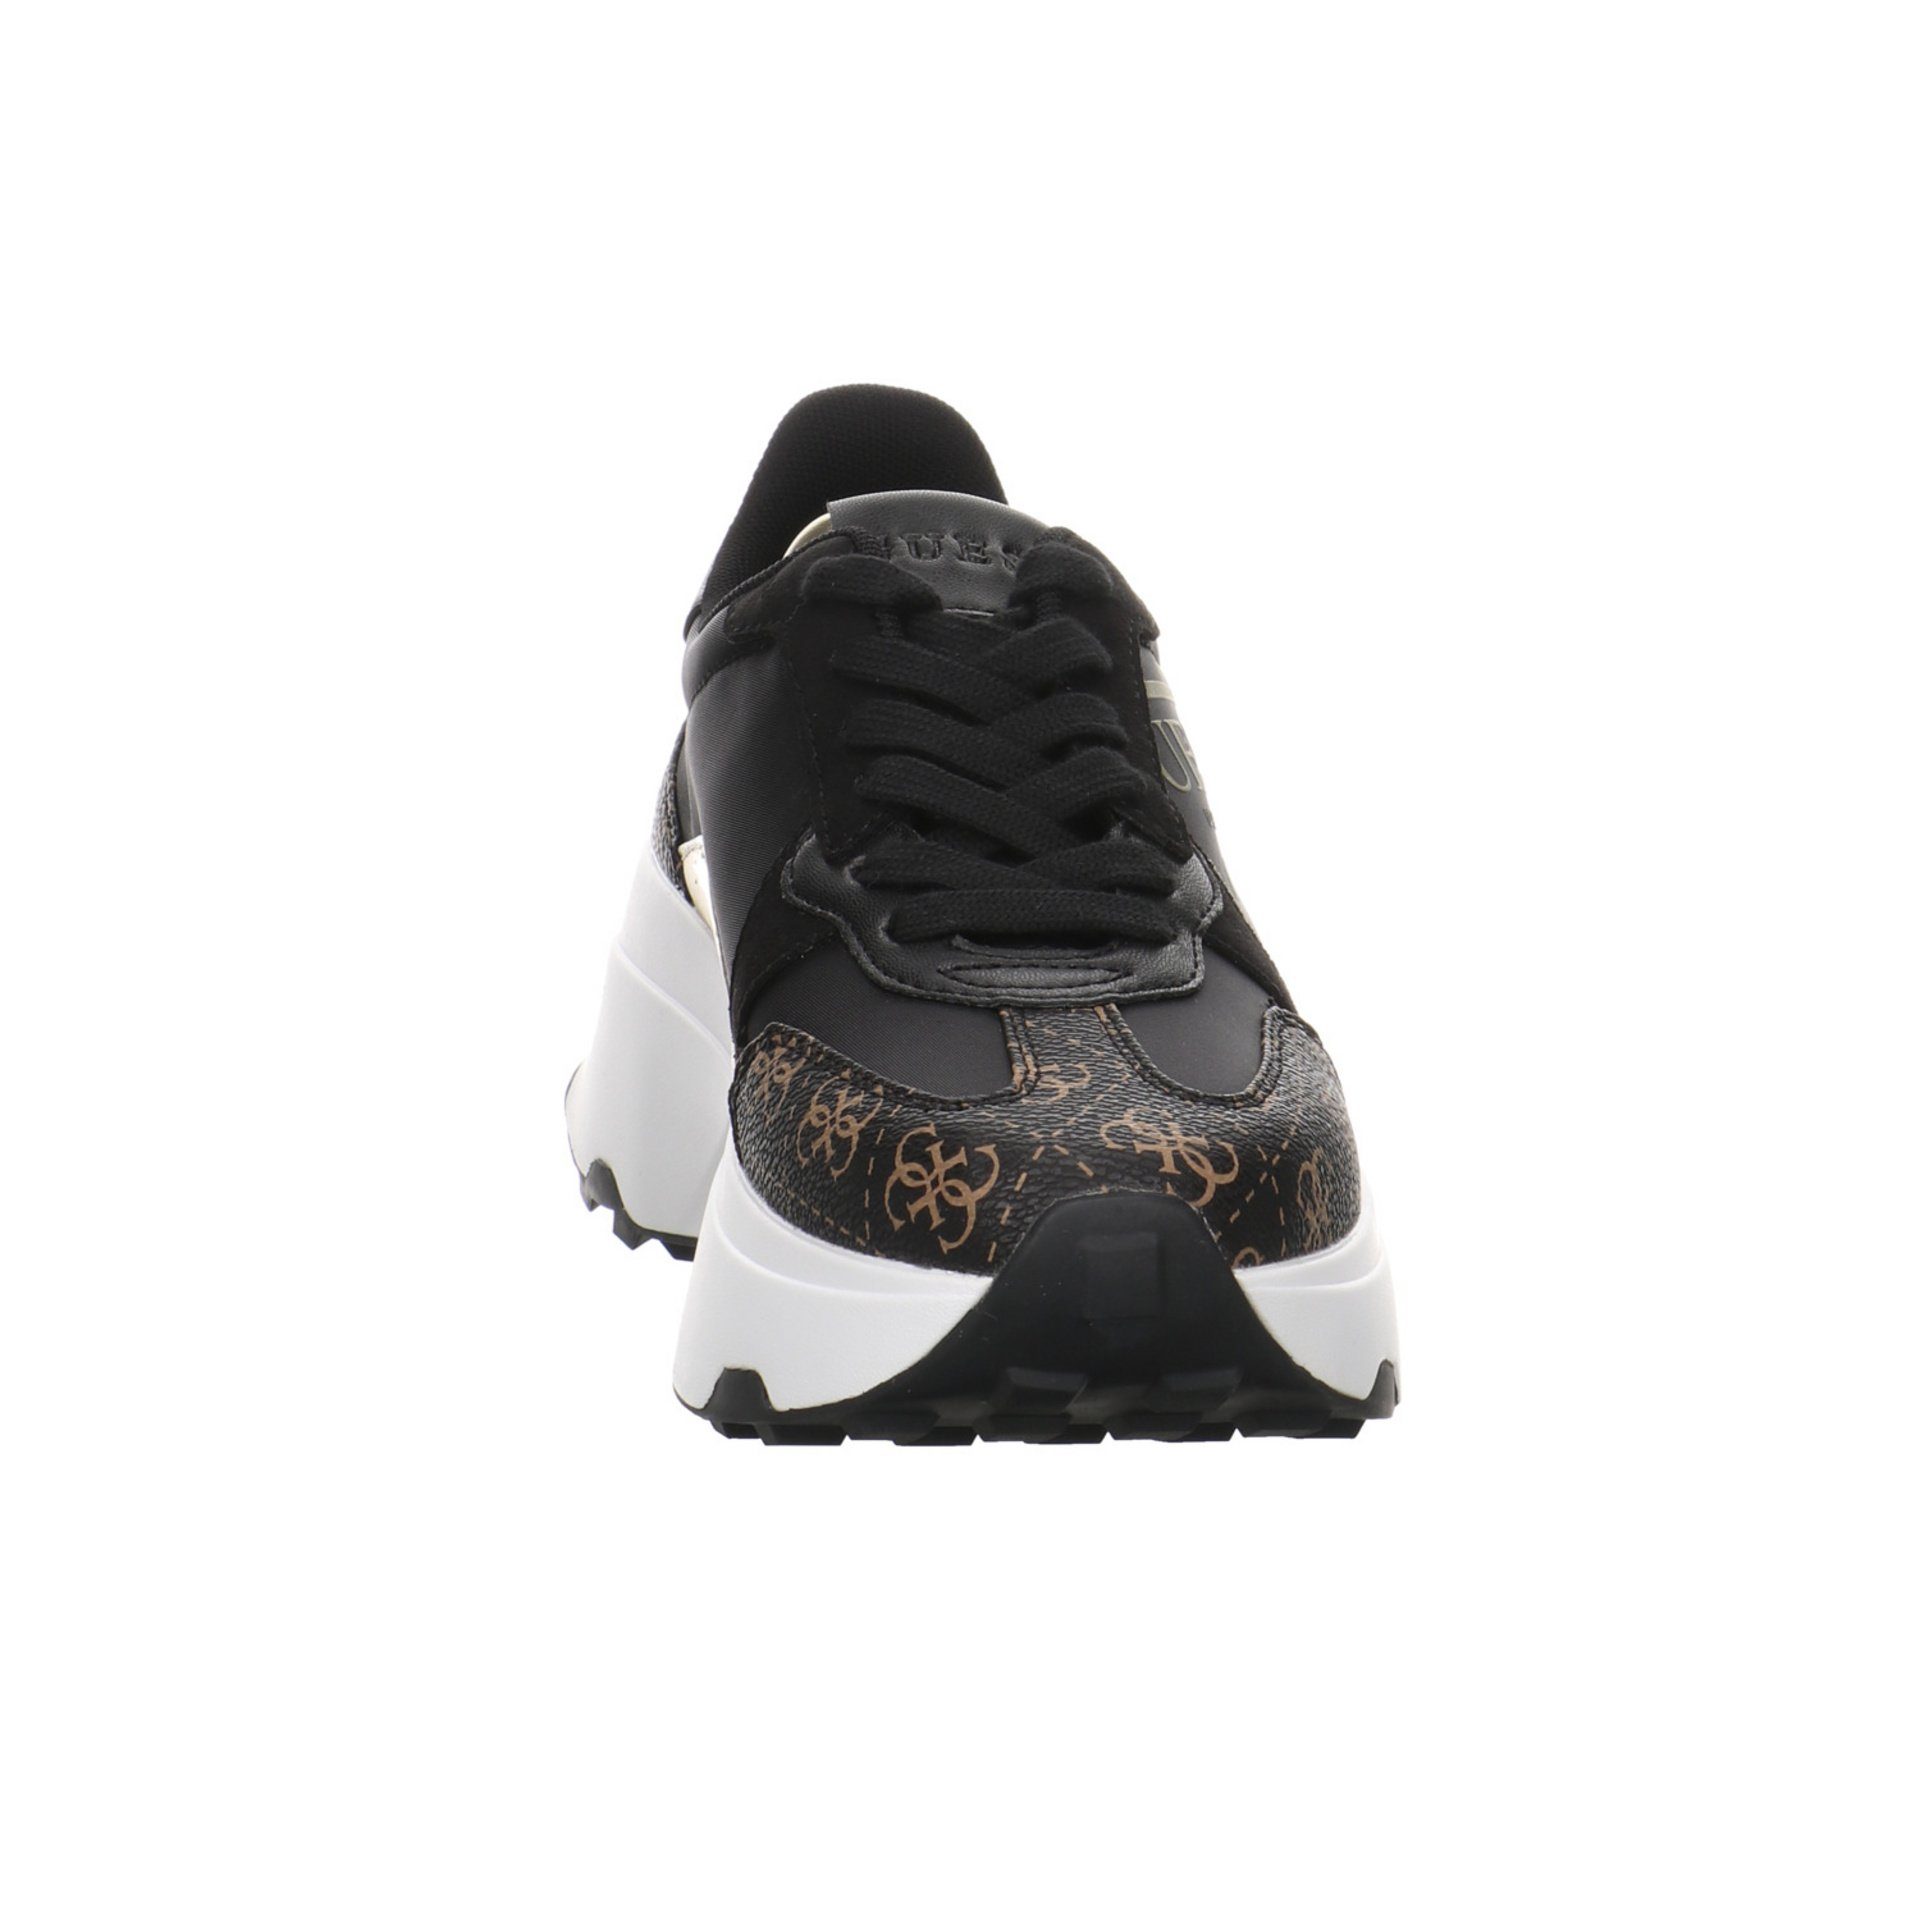 Synthetikkombination Schnürschuh Damen Calebb Sneaker Runner black/brown/ocra Guess Schuhe Sneaker